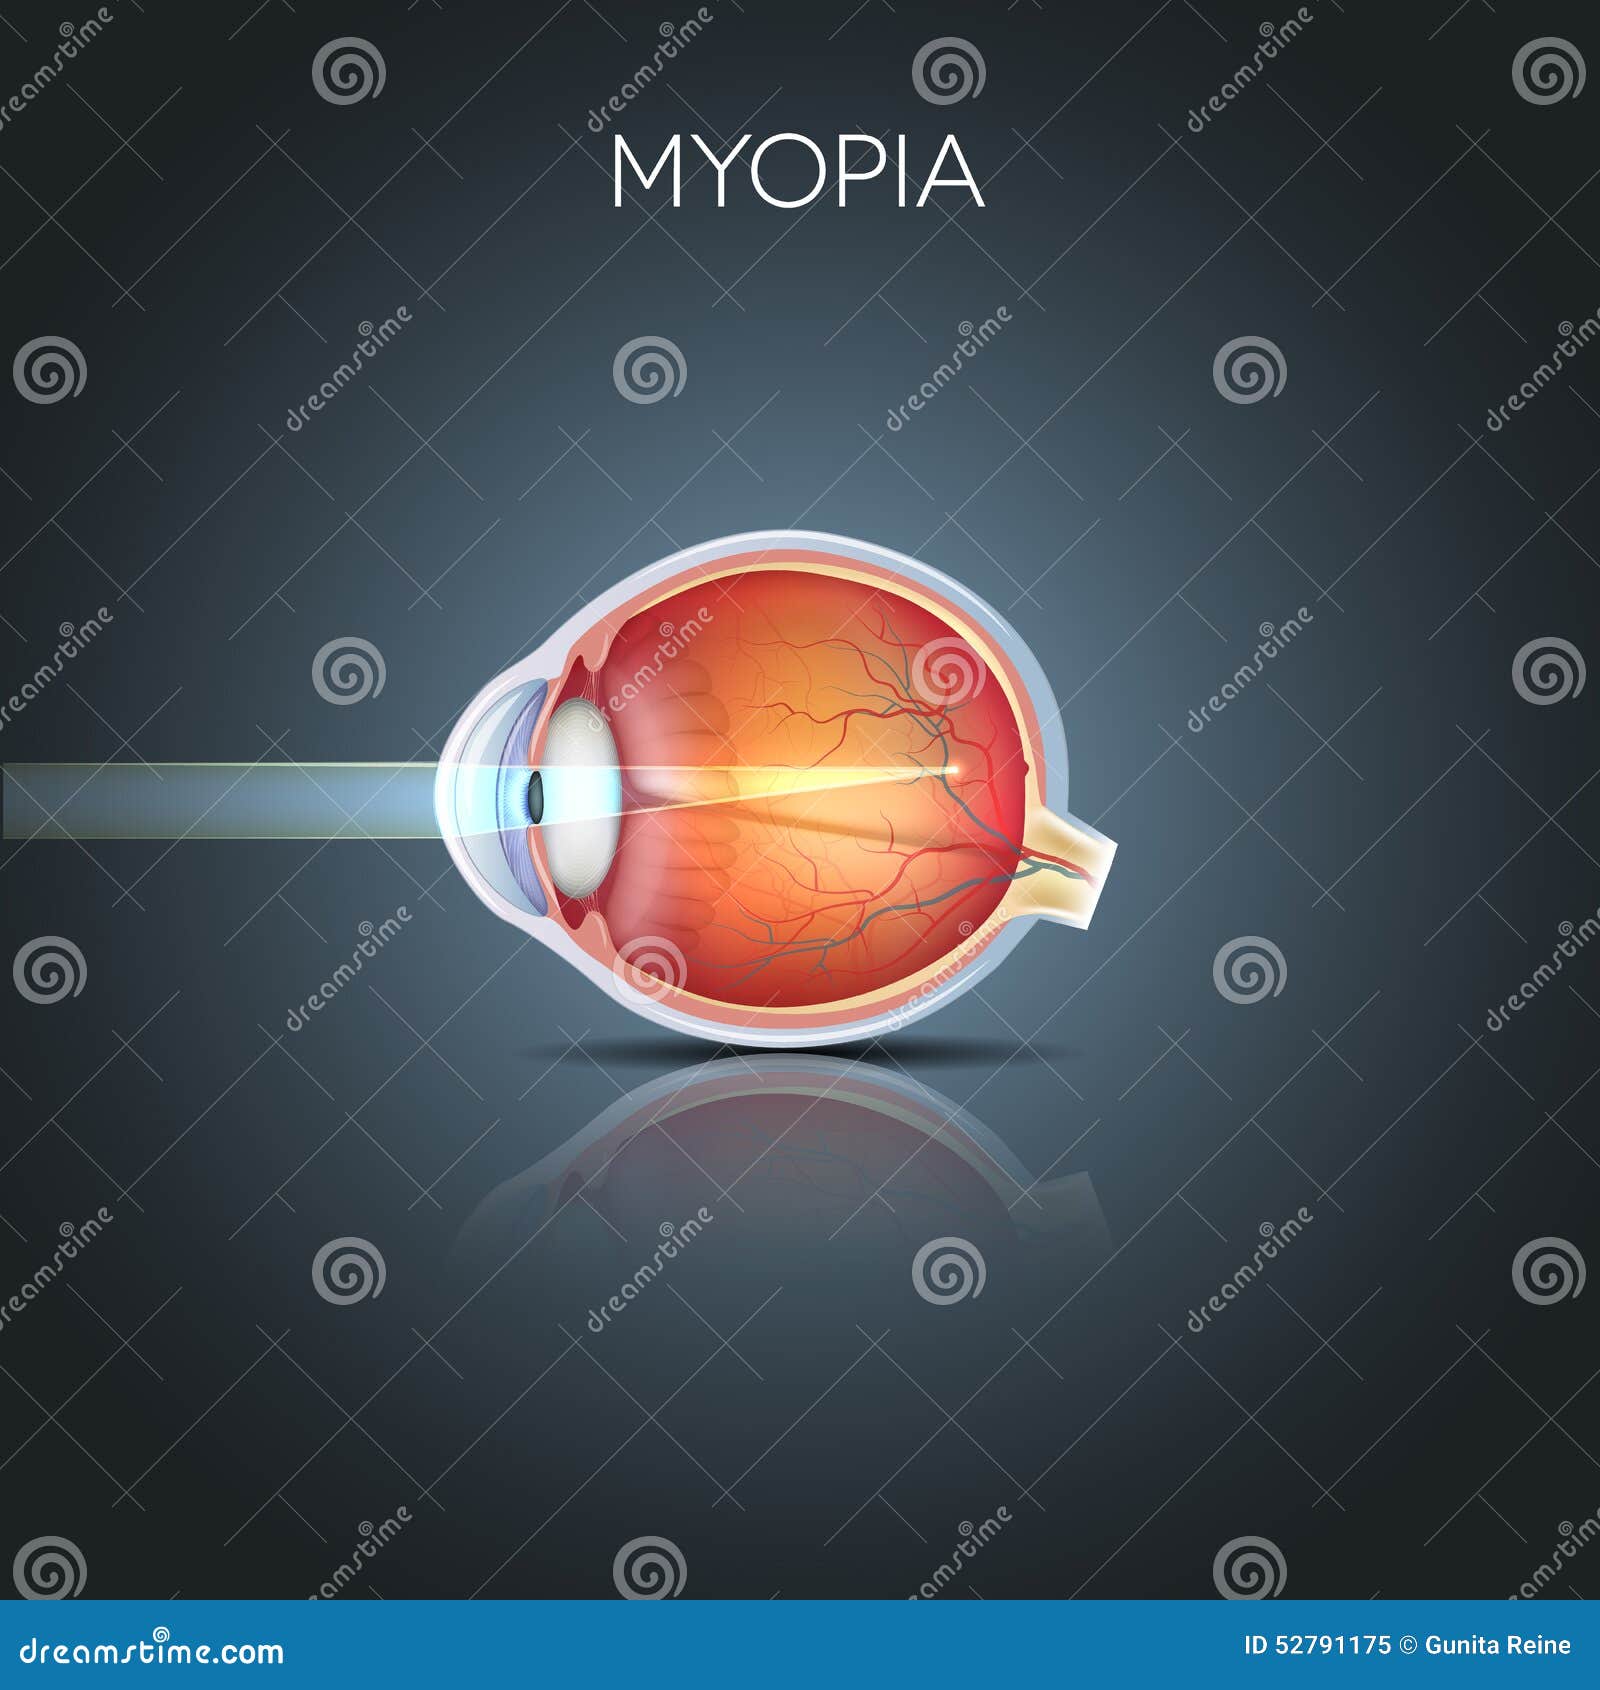 myopia, short sighted eye